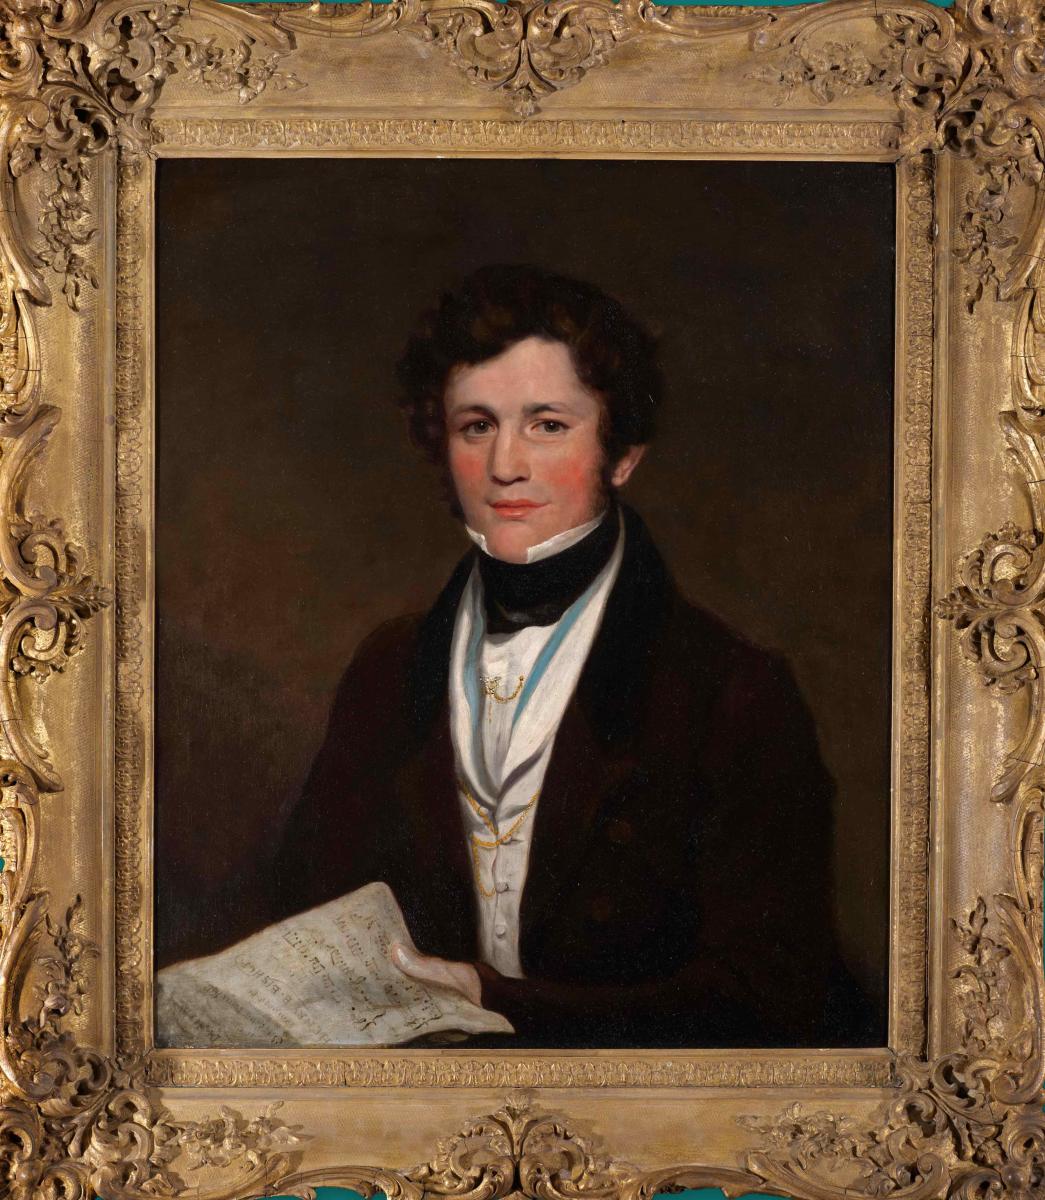 Attributed to Sir George Hayter, Portrait of Sir Henry Rowley Bishop (1786-1855)